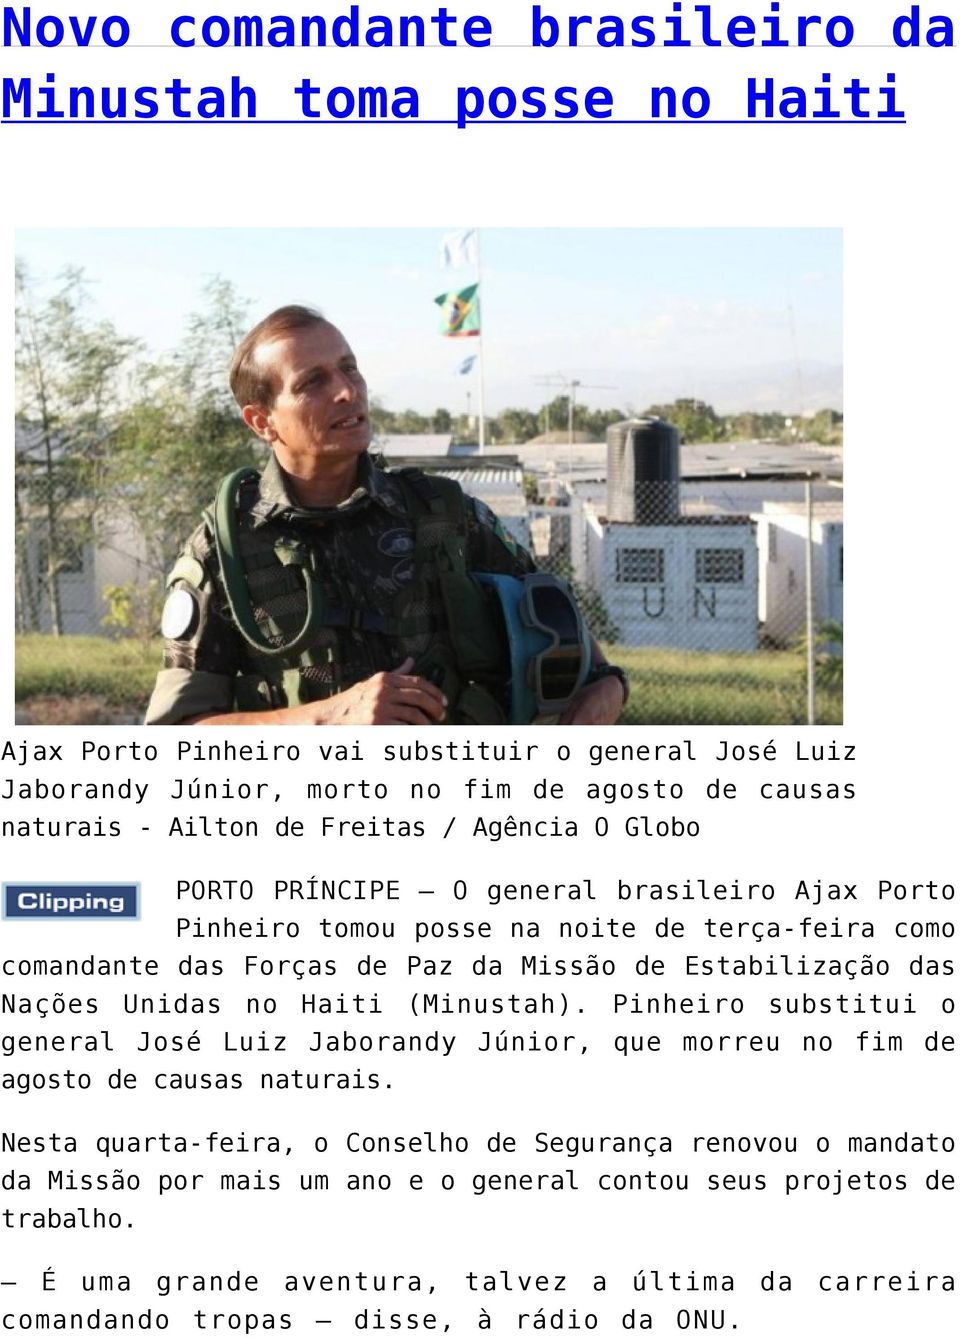 das Nações Unidas no Haiti (Minustah). Pinheiro substitui o general José Luiz Jaborandy Júnior, que morreu no fim de agosto de causas naturais.